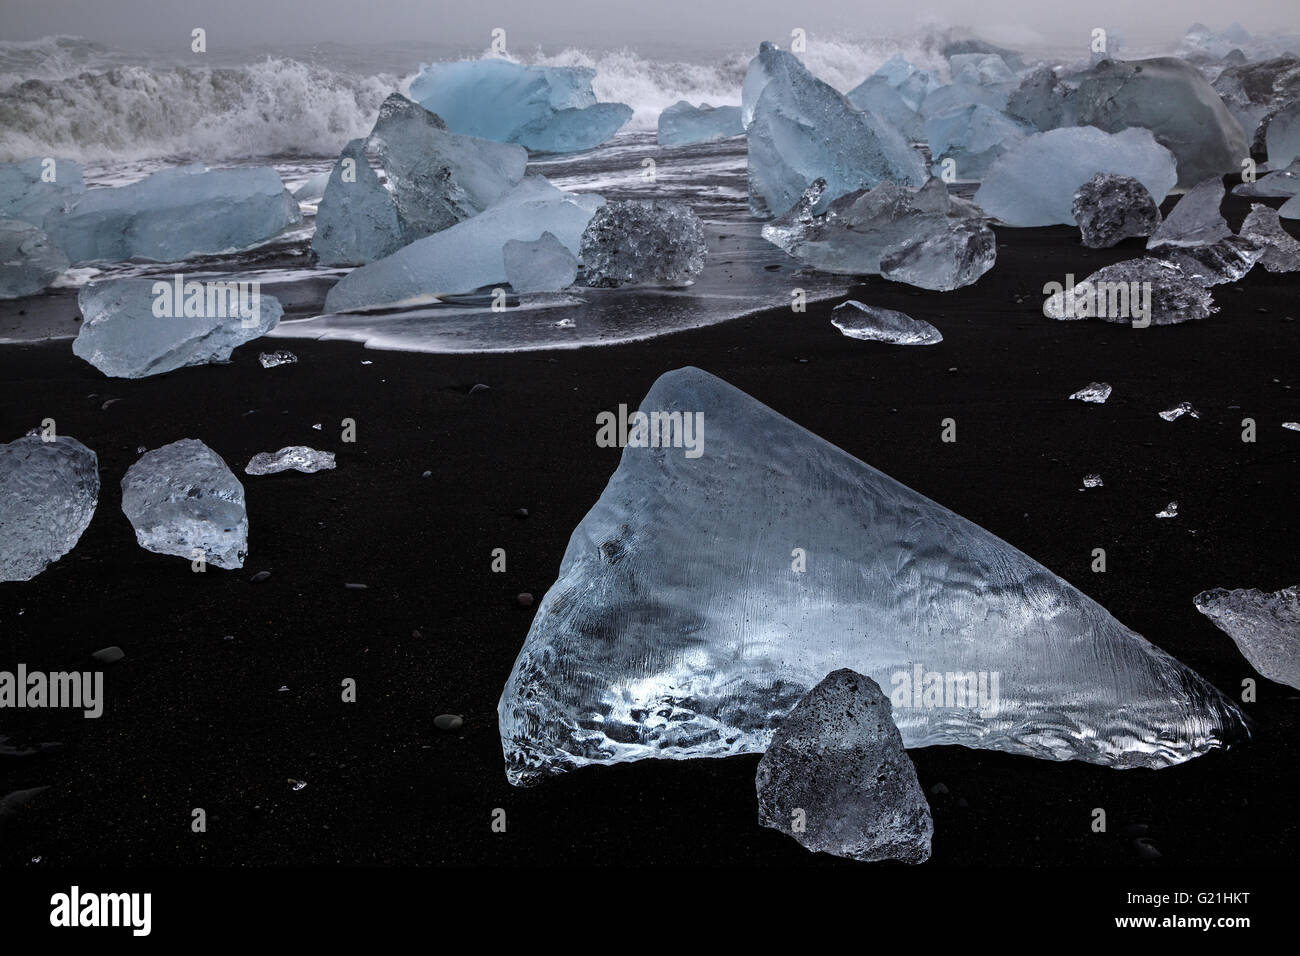 Des morceaux de glace flottante, à la plage de lave près de Jökulsarlon, Islande Banque D'Images